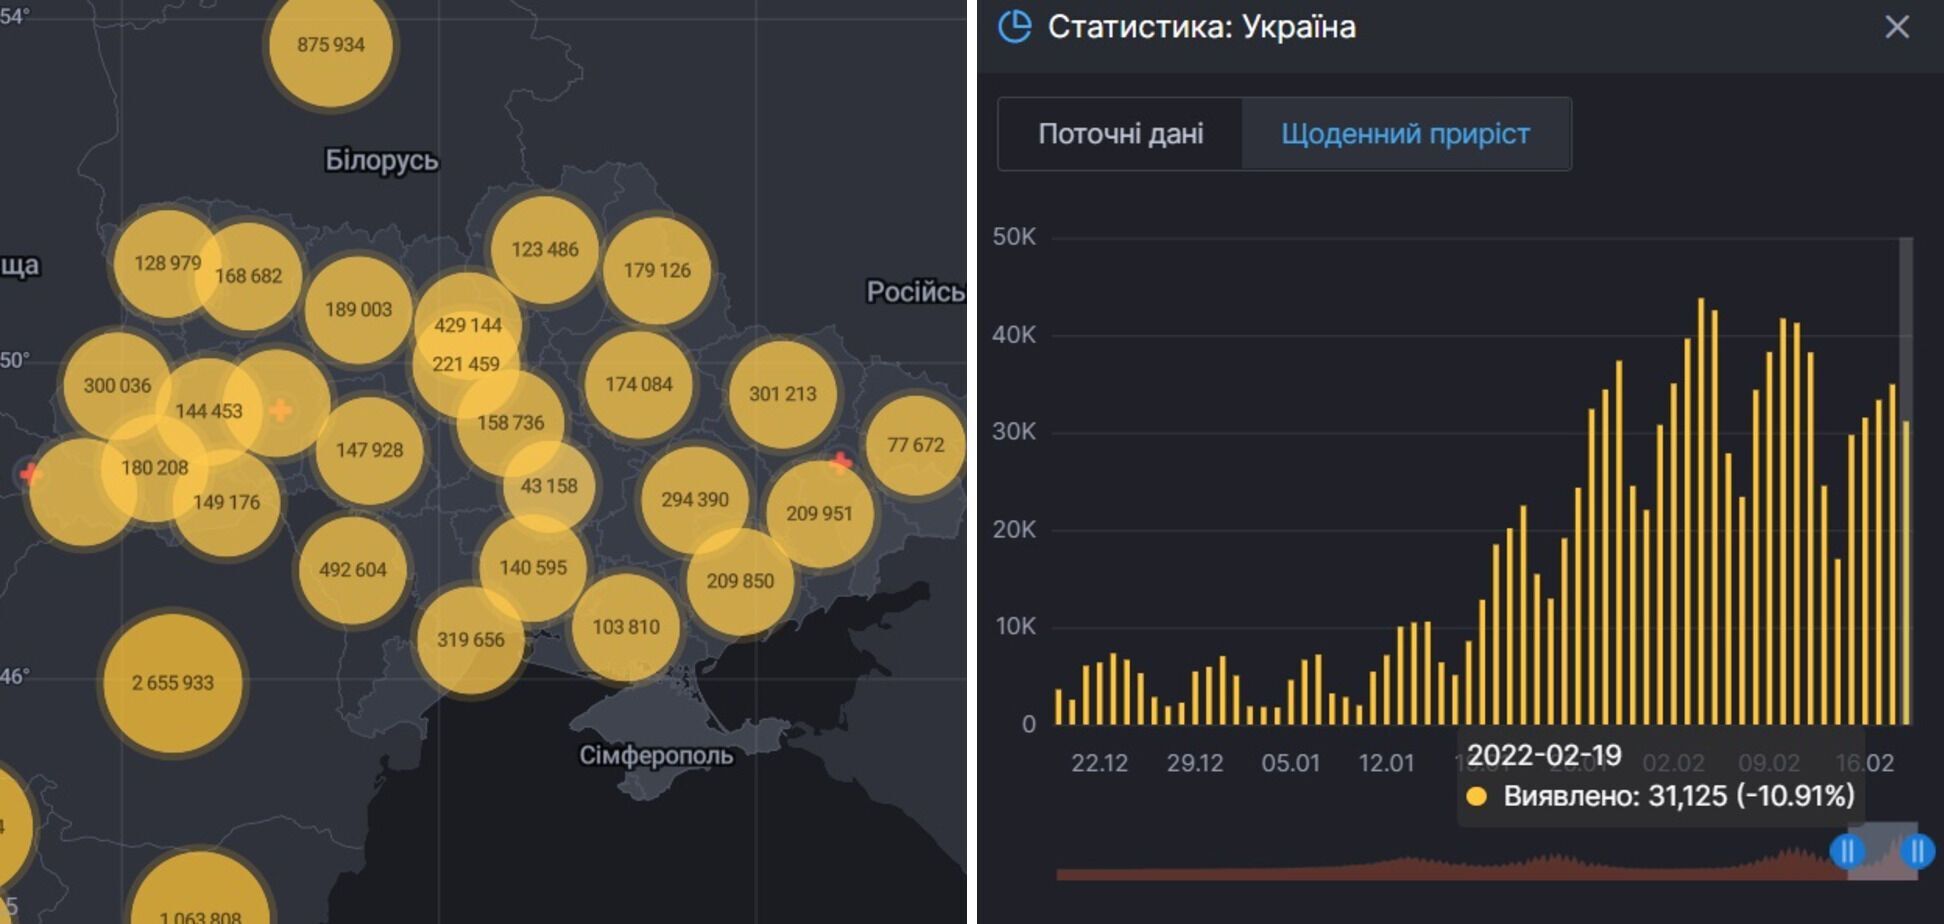 Общее число заболевших в Украине и динамика их выявления.